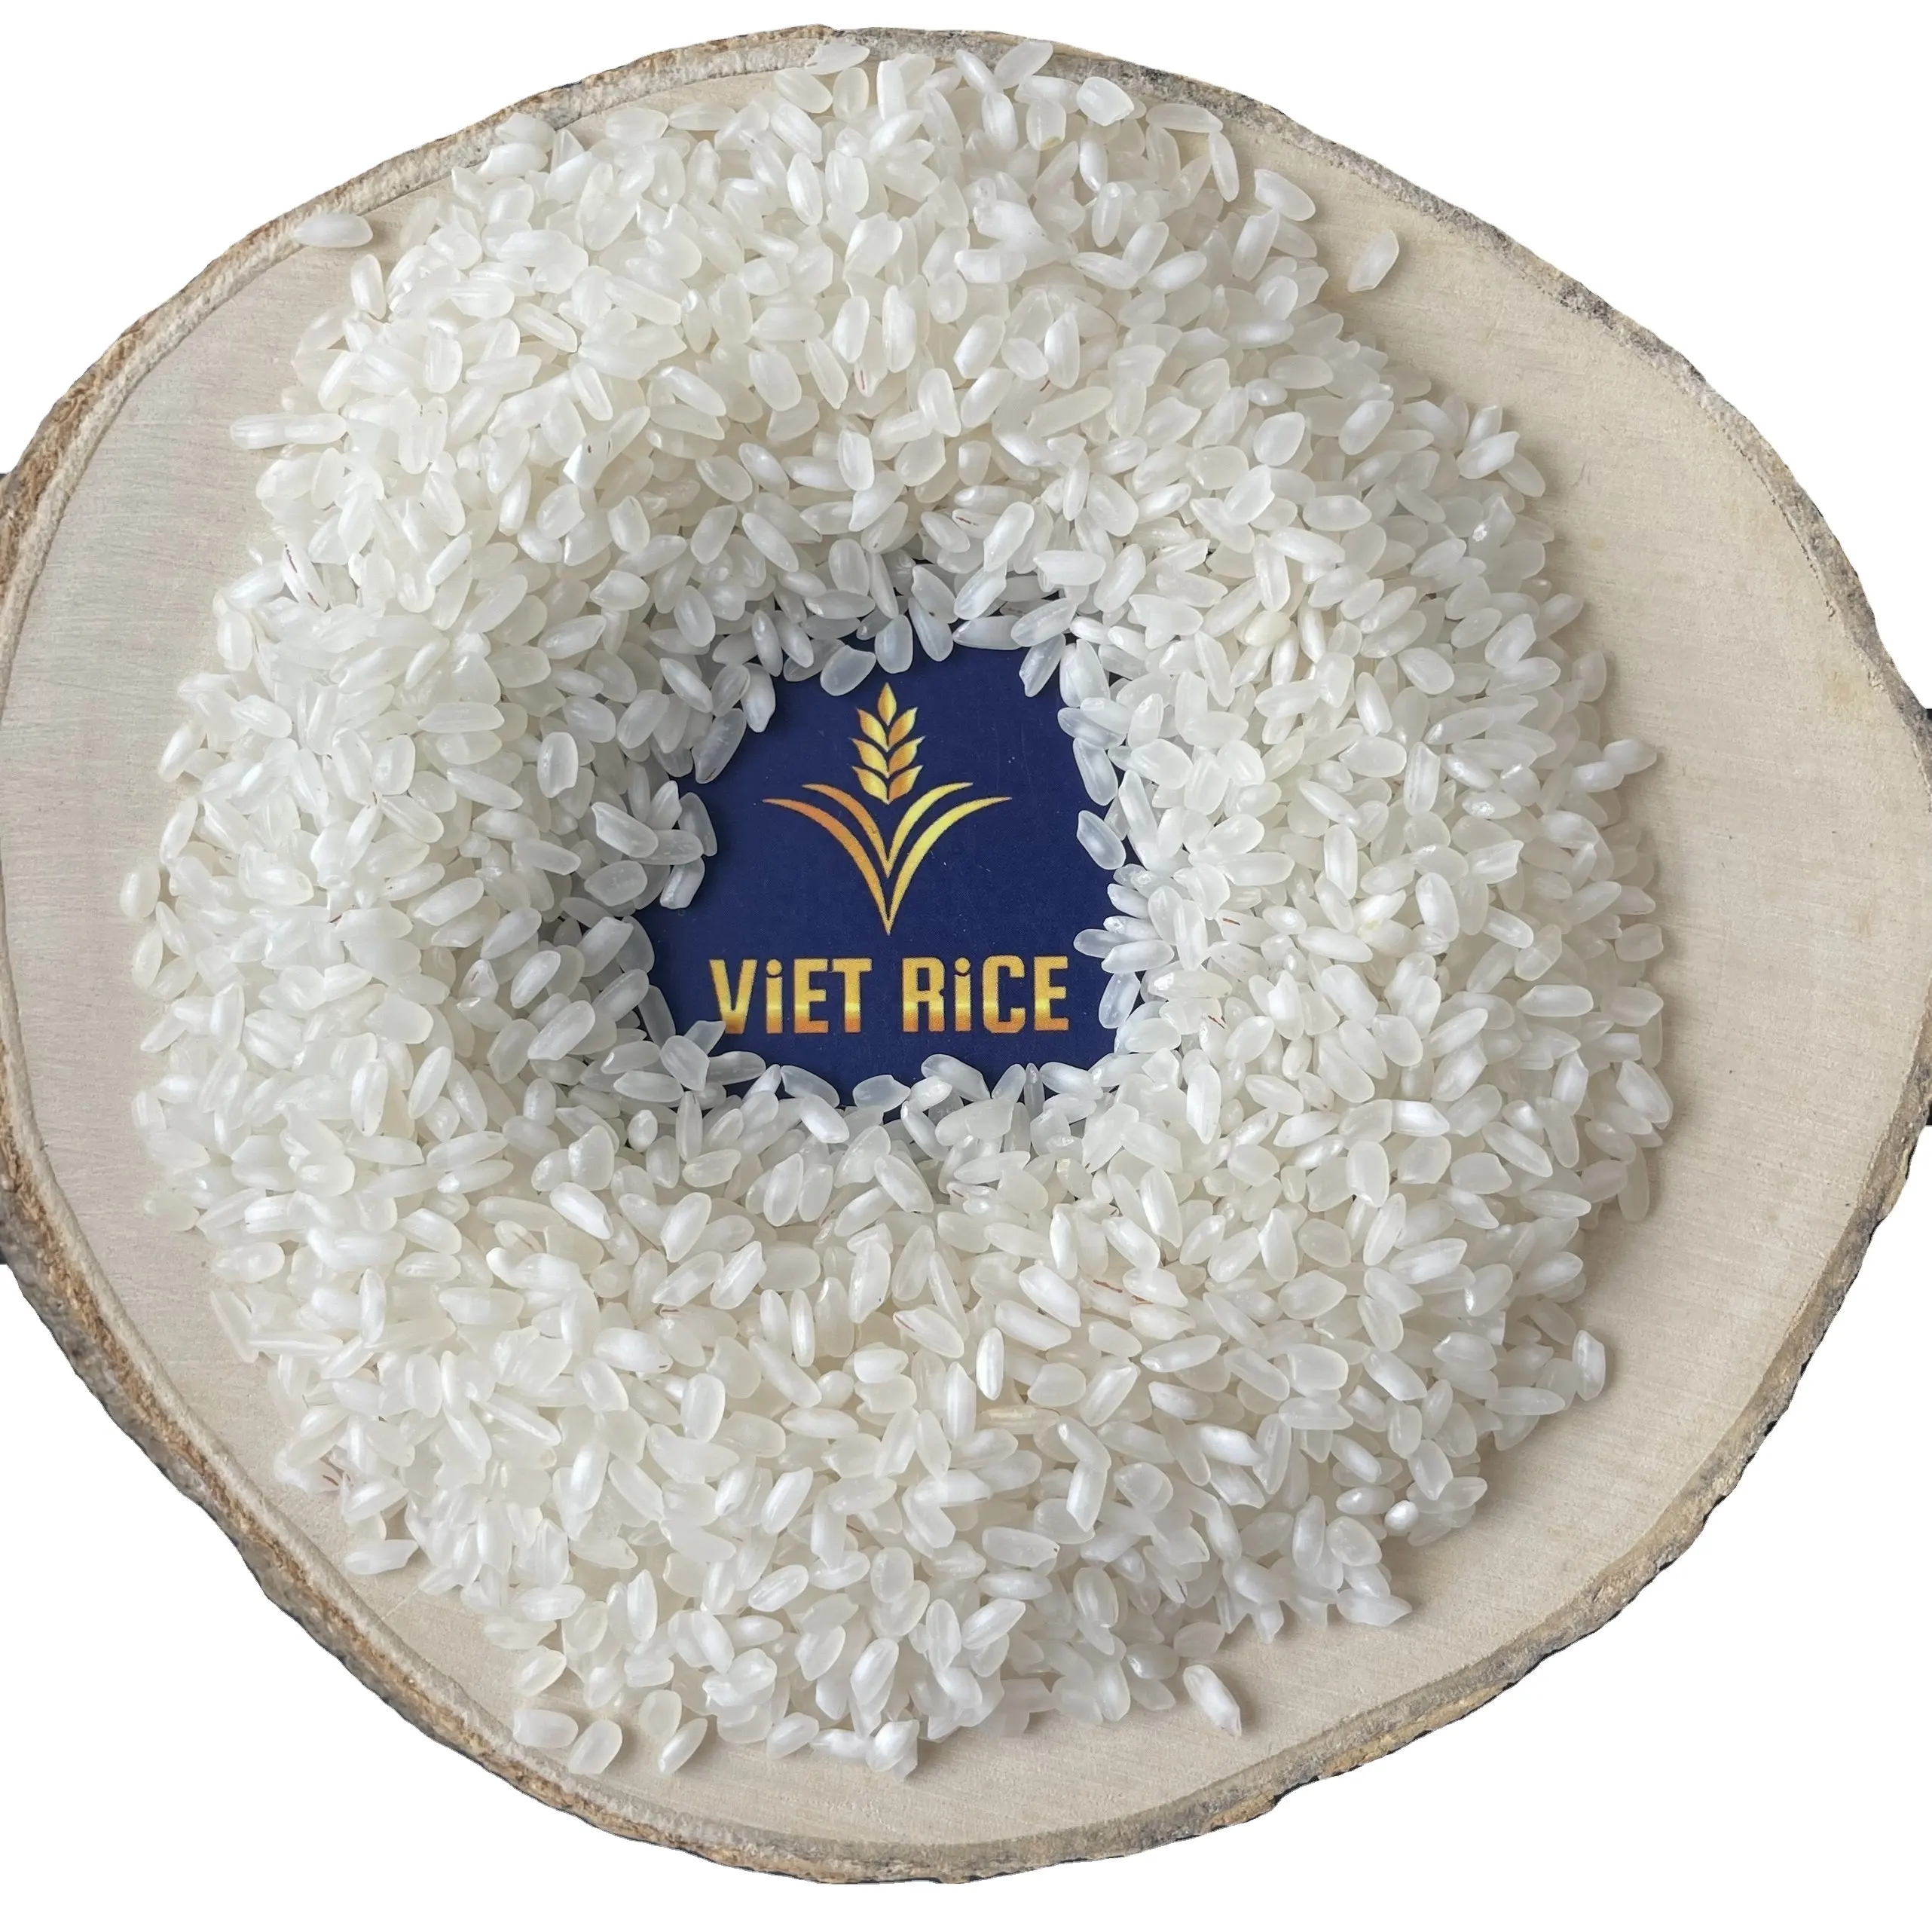 CALROSE RIZ 5% сломанный поставленный-белый рис среднего зерна премиум-класса, поставляемый из VIETRICE-ведущего производителя и экспортера риса